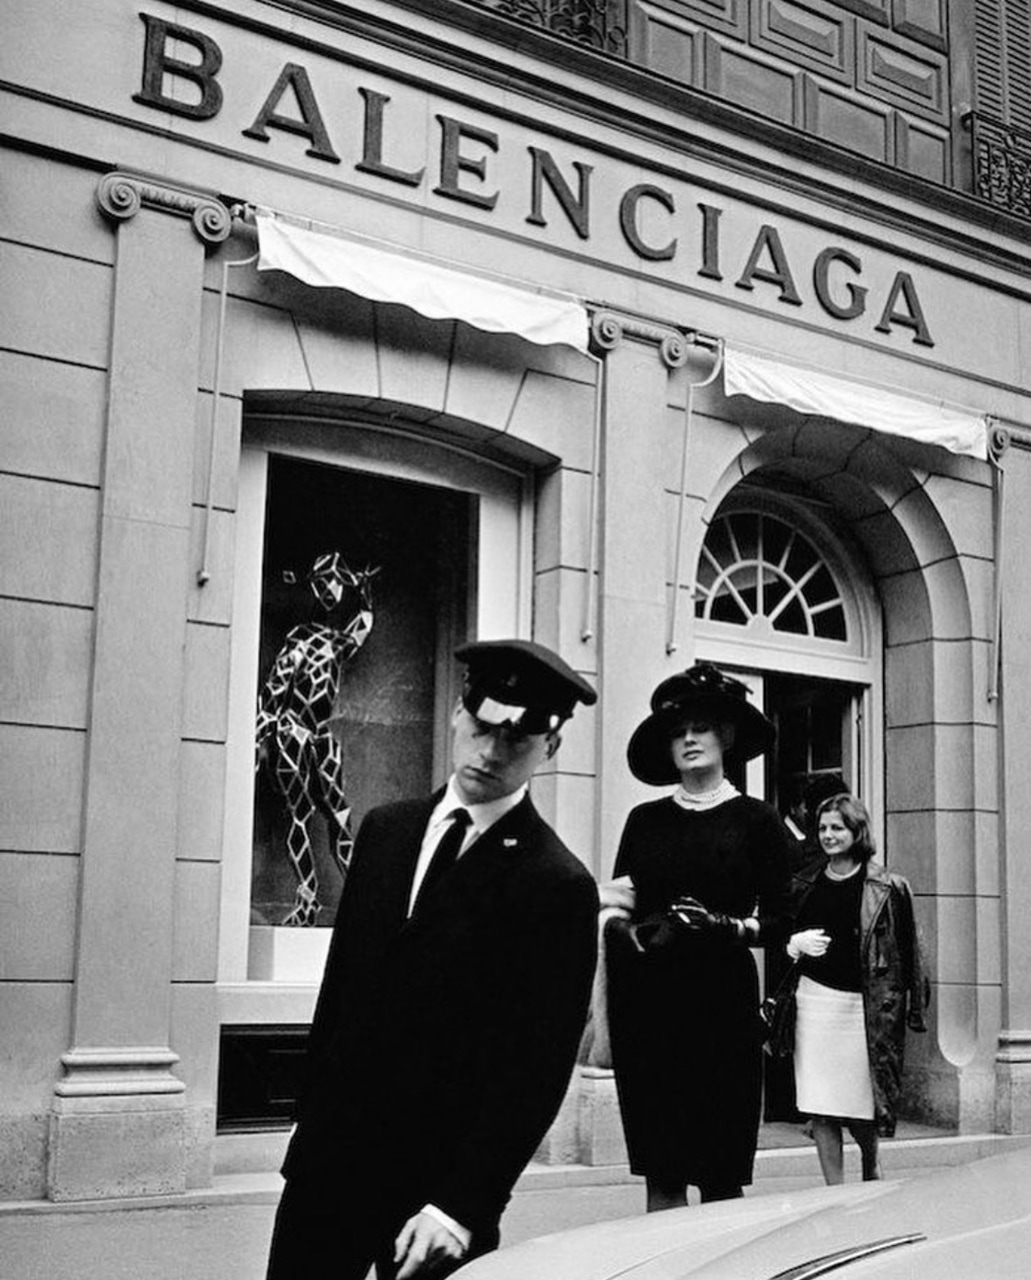  Demna Gvasalia - người mang tính đột phá hiện đại cho hầu hết các sản phẩm của Balenciaga.